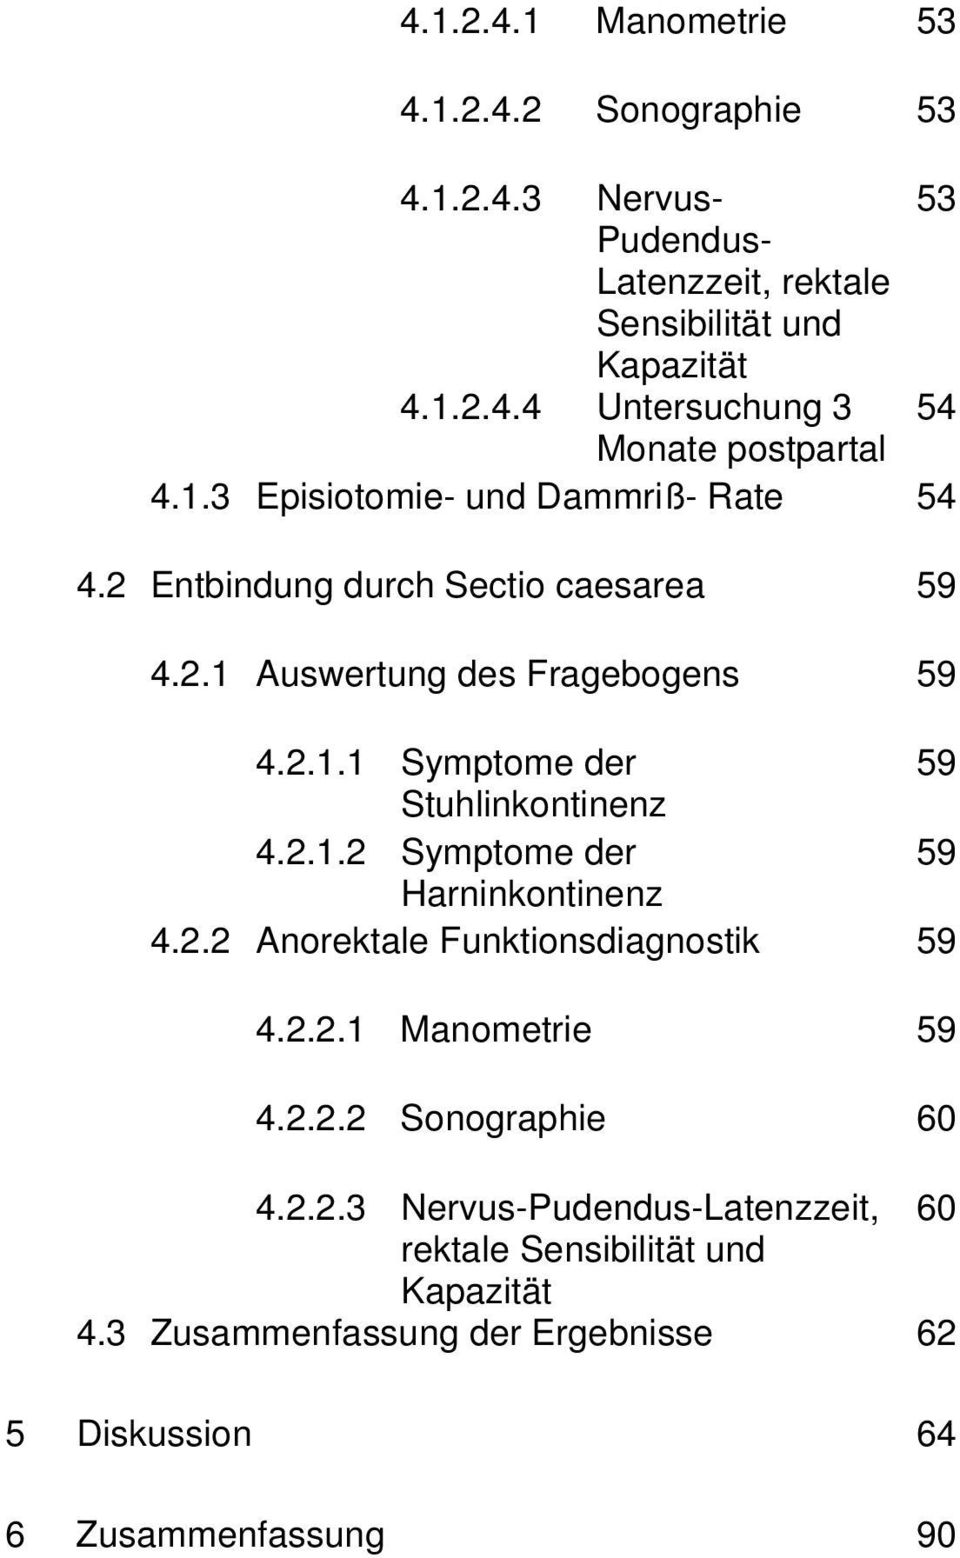 2.1.2 Symptome der 59 Harninkontinenz 4.2.2 Anorektale Funktionsdiagnostik 59 4.2.2.1 Manometrie 59 4.2.2.2 Sonographie 60 4.2.2.3 Nervus-Pudendus-Latenzzeit, 60 rektale Sensibilität und Kapazität 4.